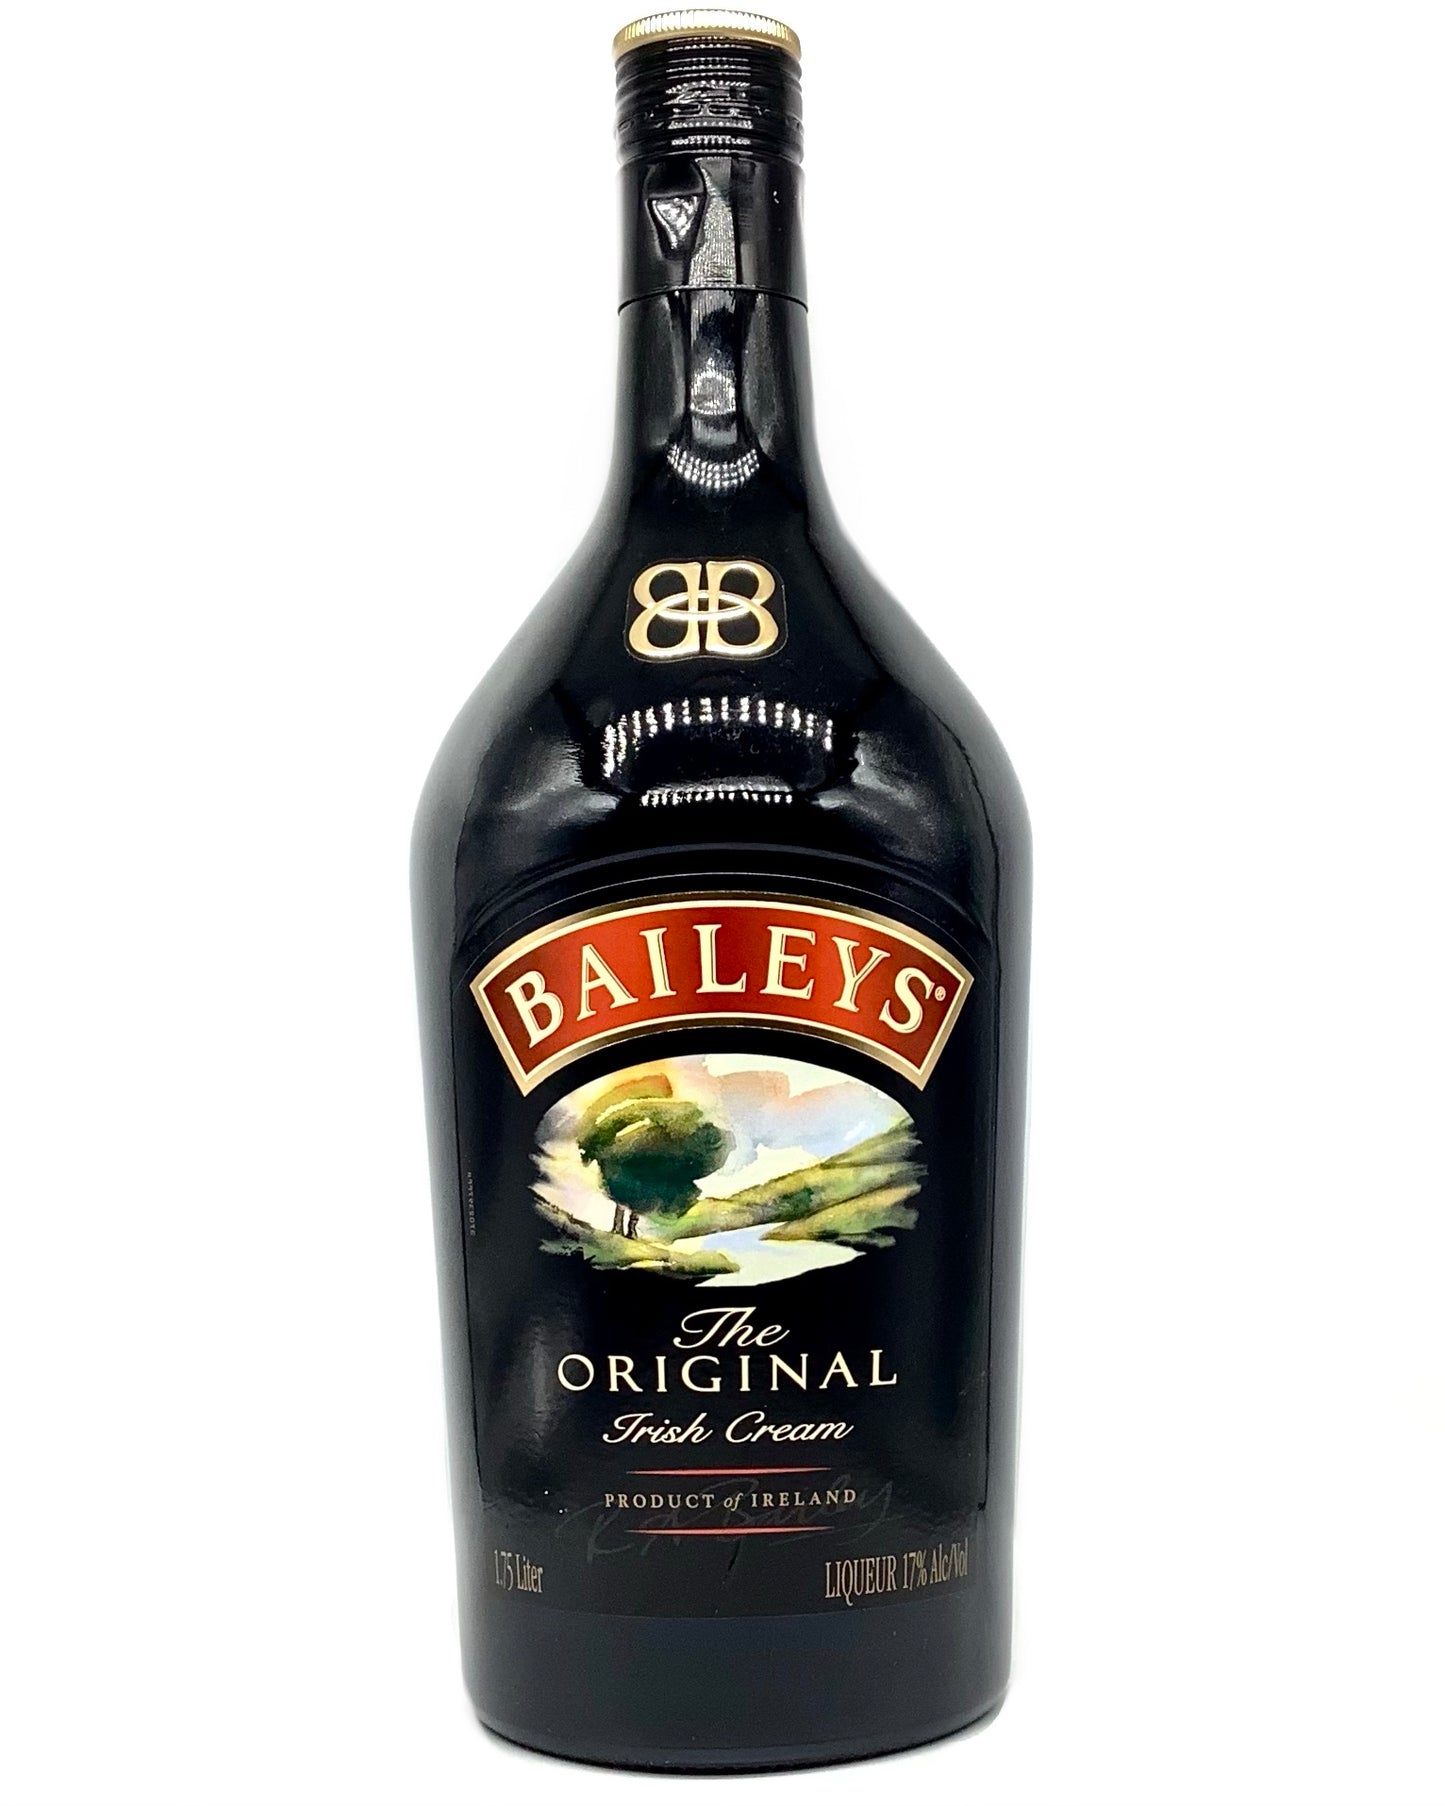 Baileys "The Original" Irish Cream 1.75L